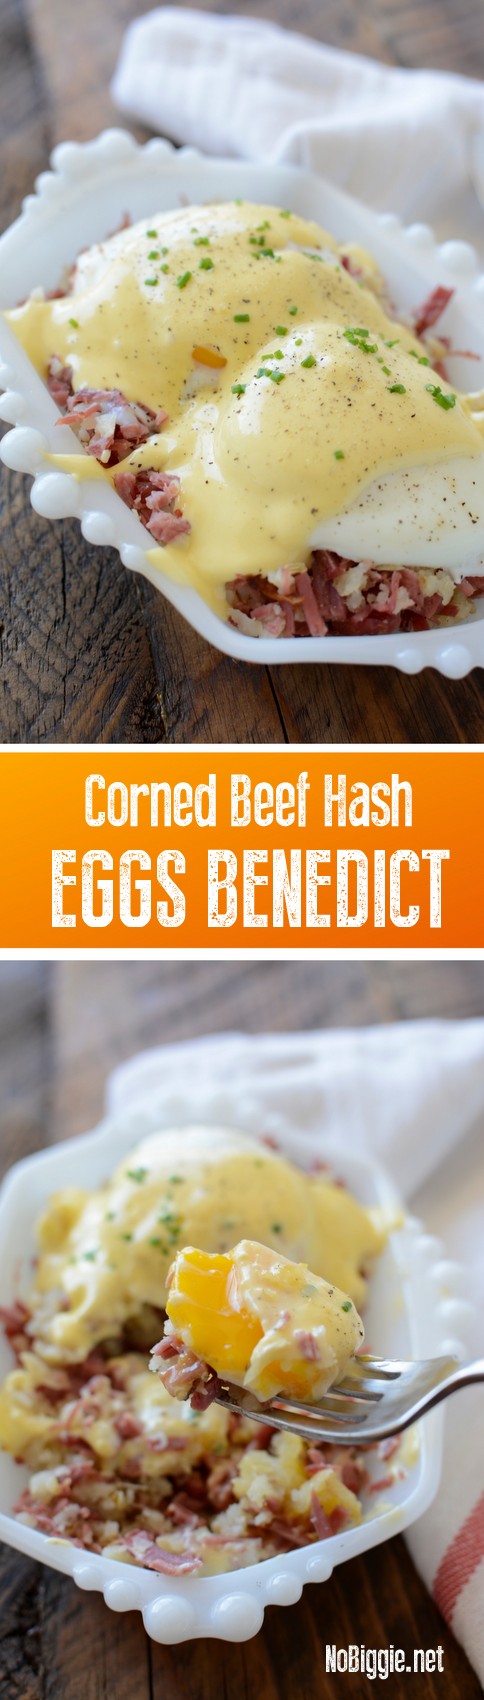 Corned Beef Hash Eggs Benedict | NoBiggie.net